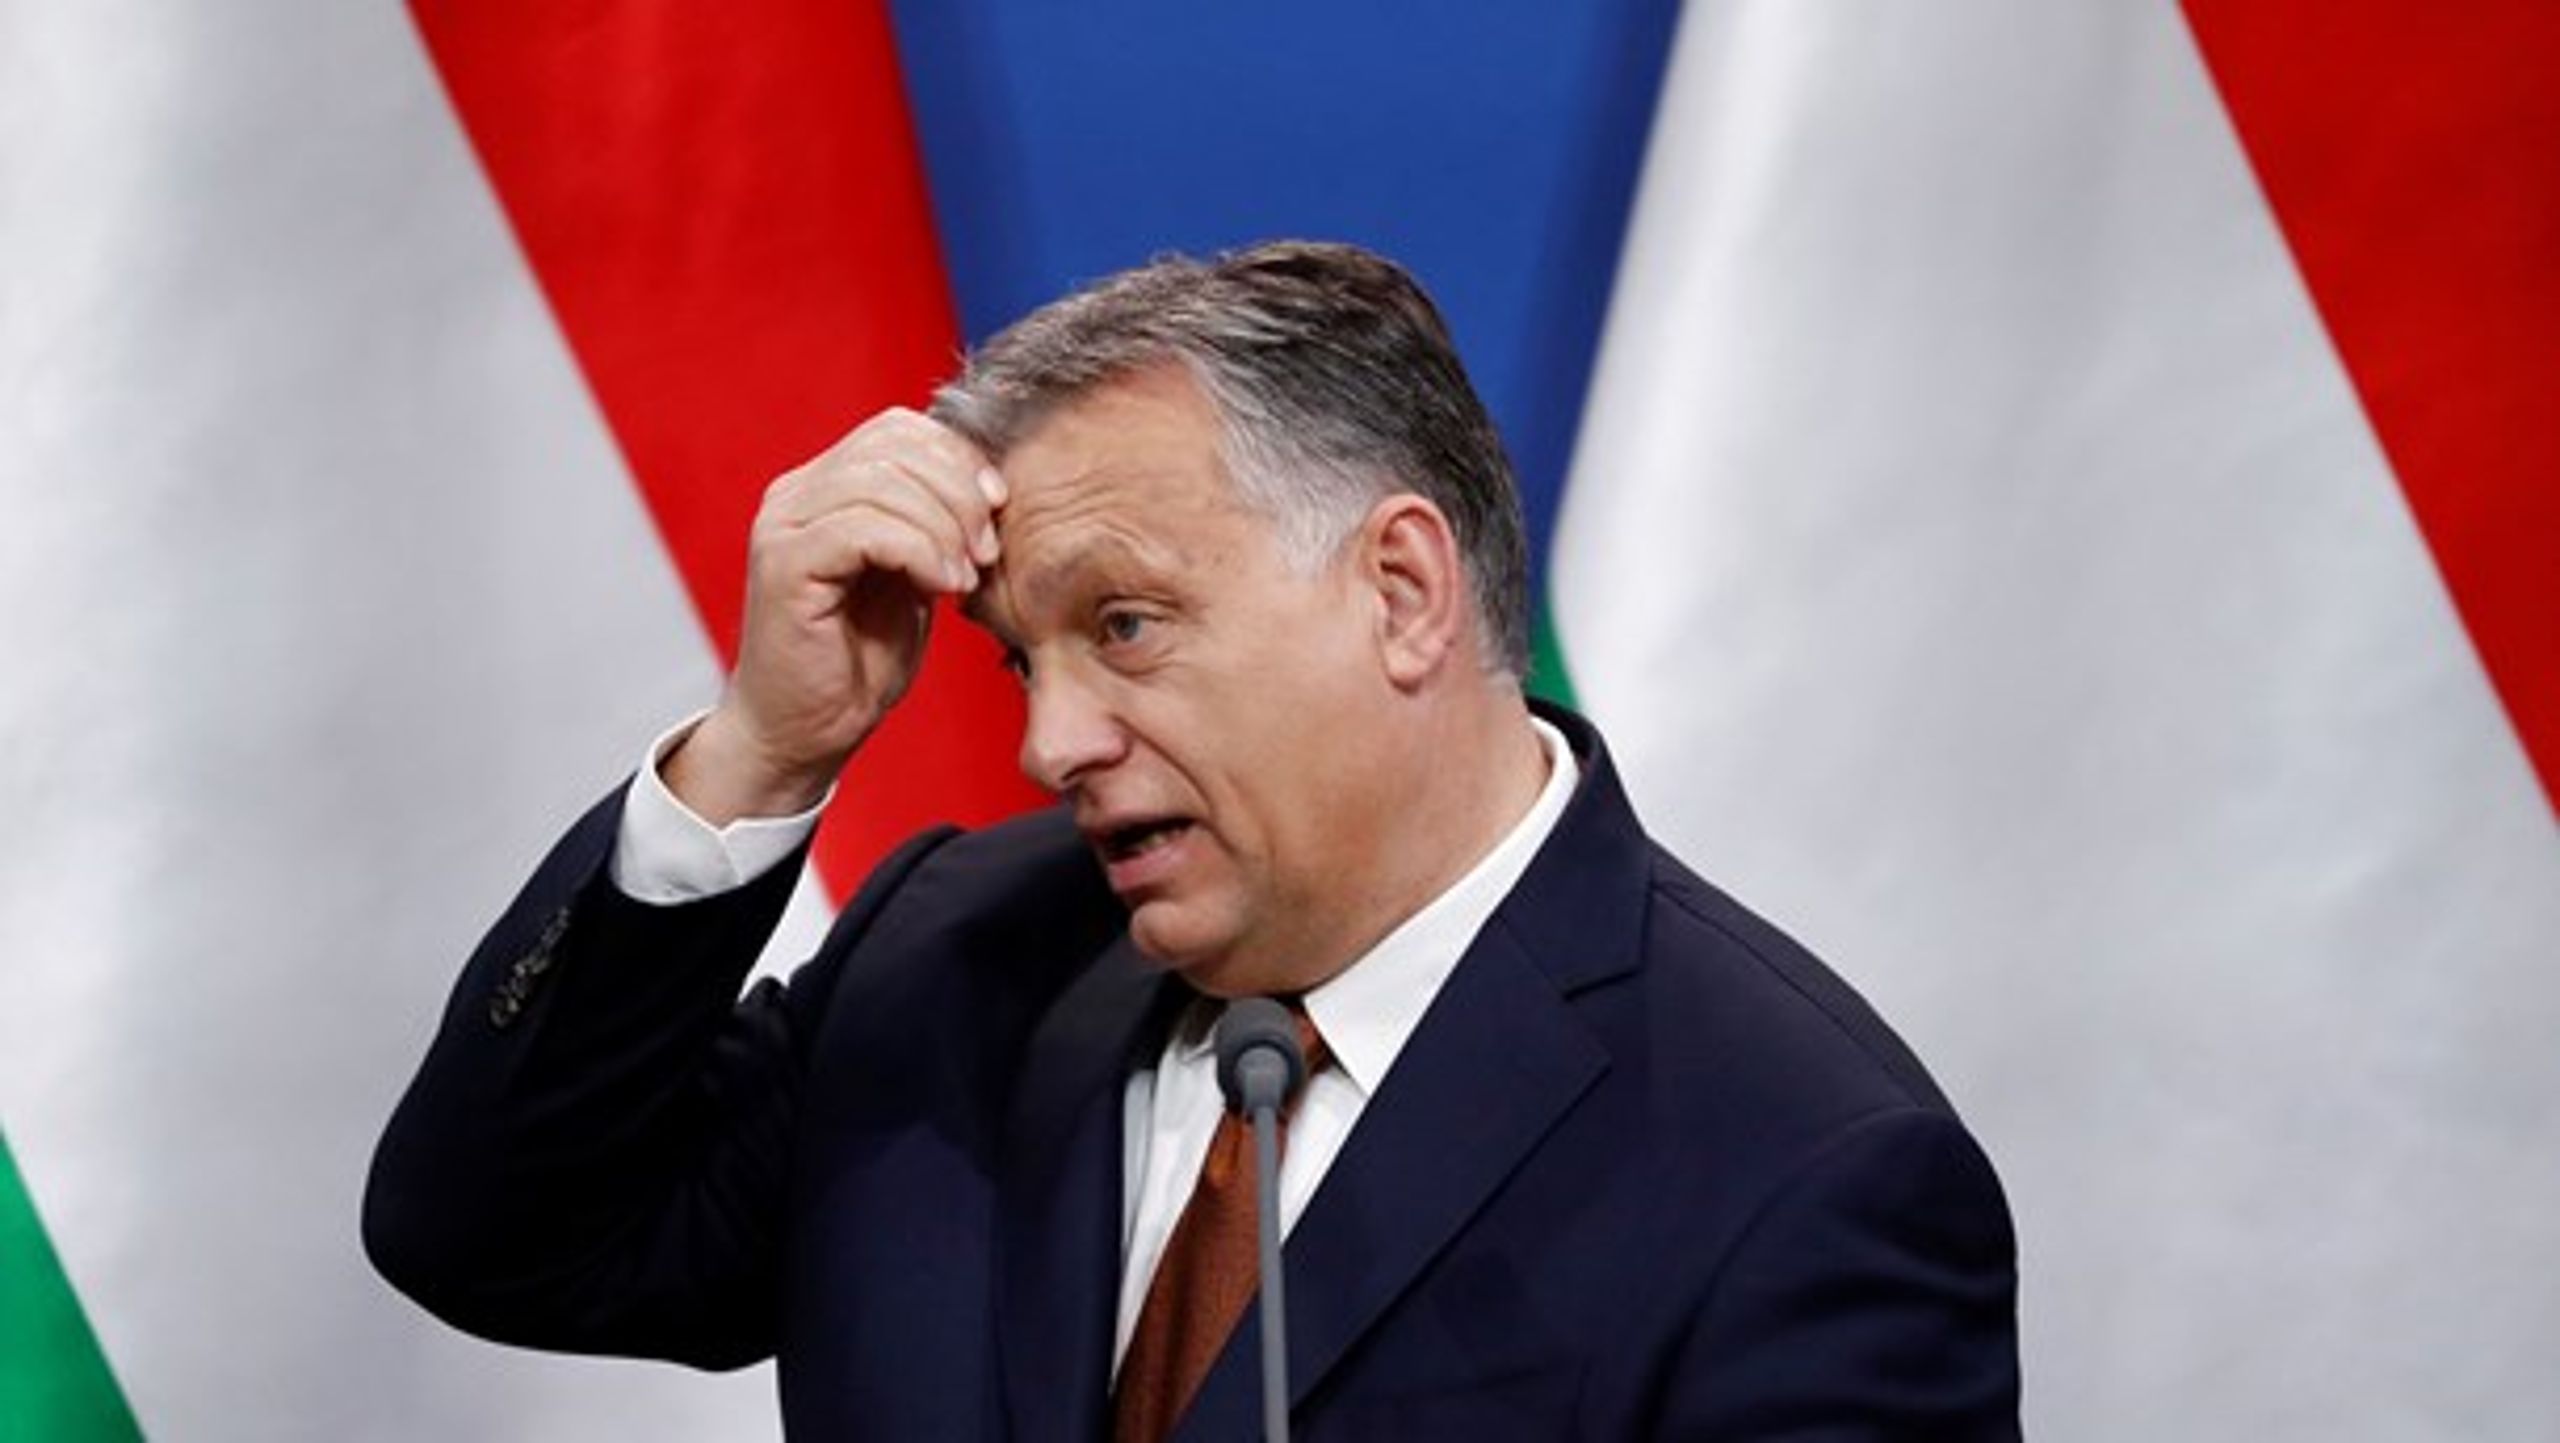 Lasse Skytts bog om Orbáns Ungarn er et must-read, skriver Adam Holm.